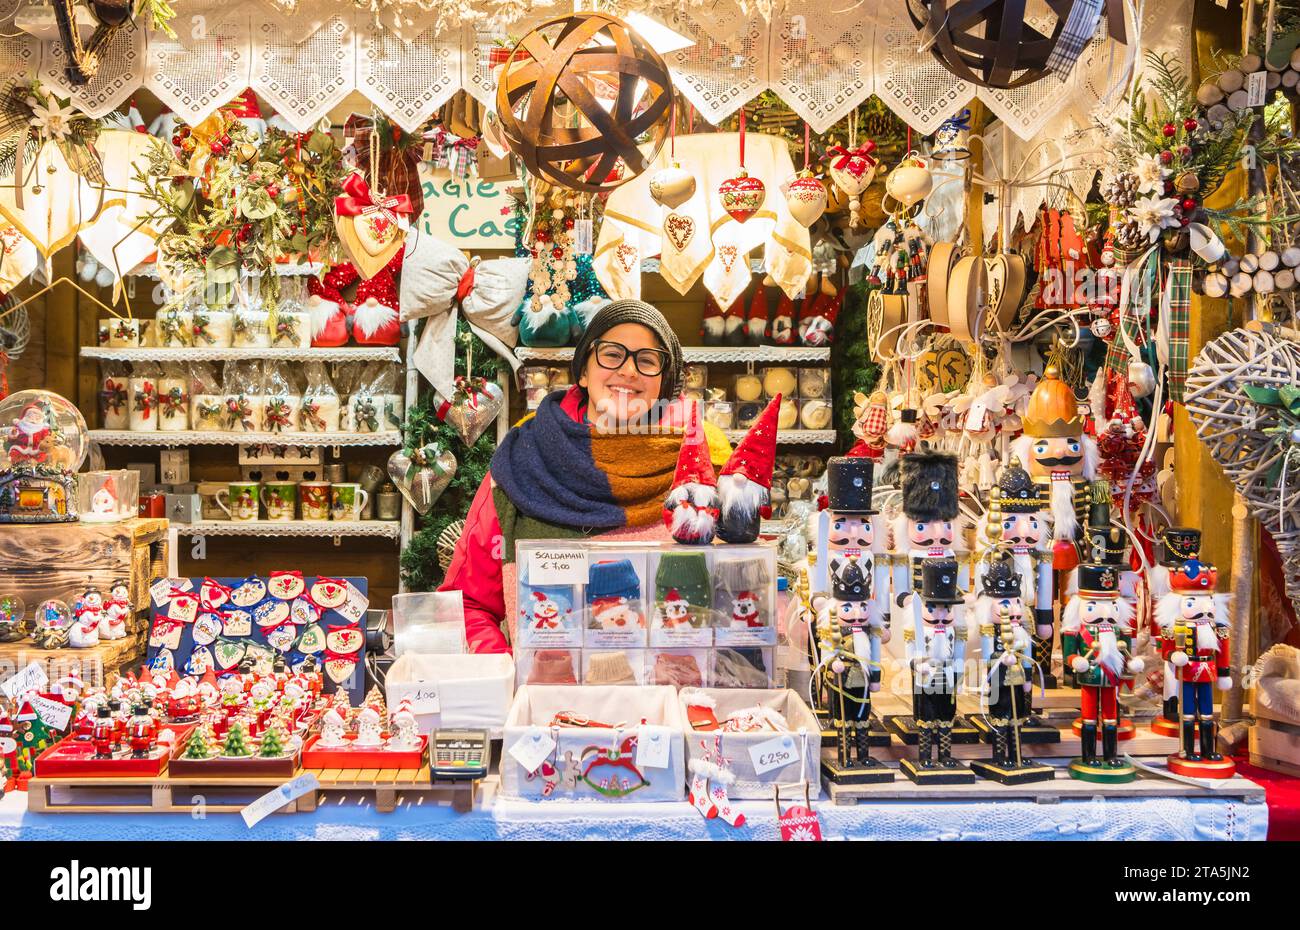 Mercatini di Natale di Trento. Chi compra nei negozi del tradizionale mercatino di natale - Trento (Trentino alto Adige), Italia settentrionale, Europa, Foto Stock